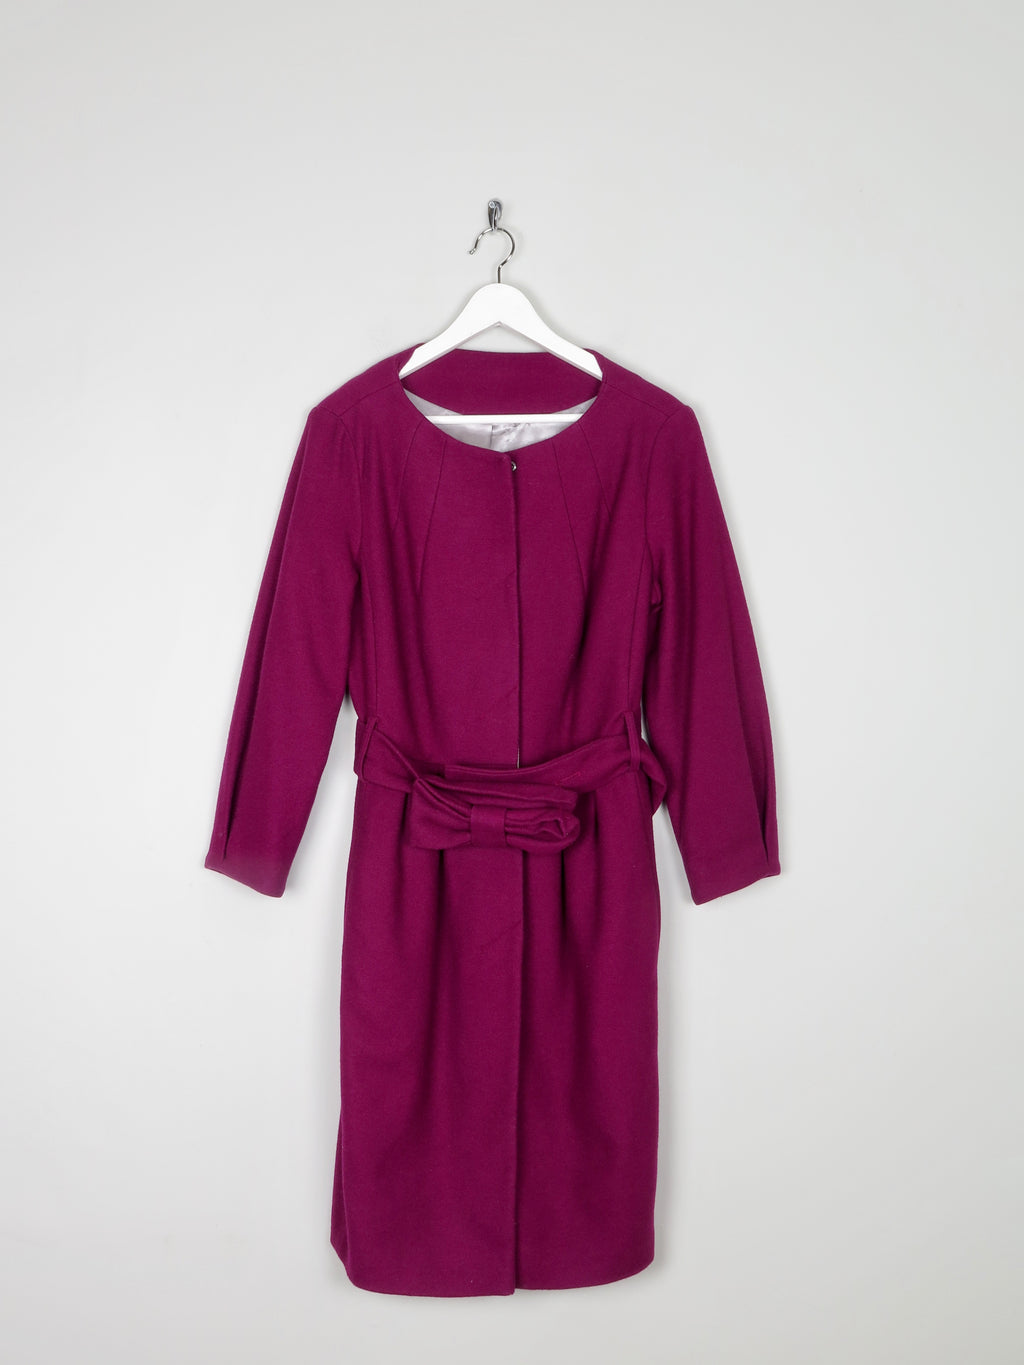 Women's Purple Wool Coat With Bow Belt 10